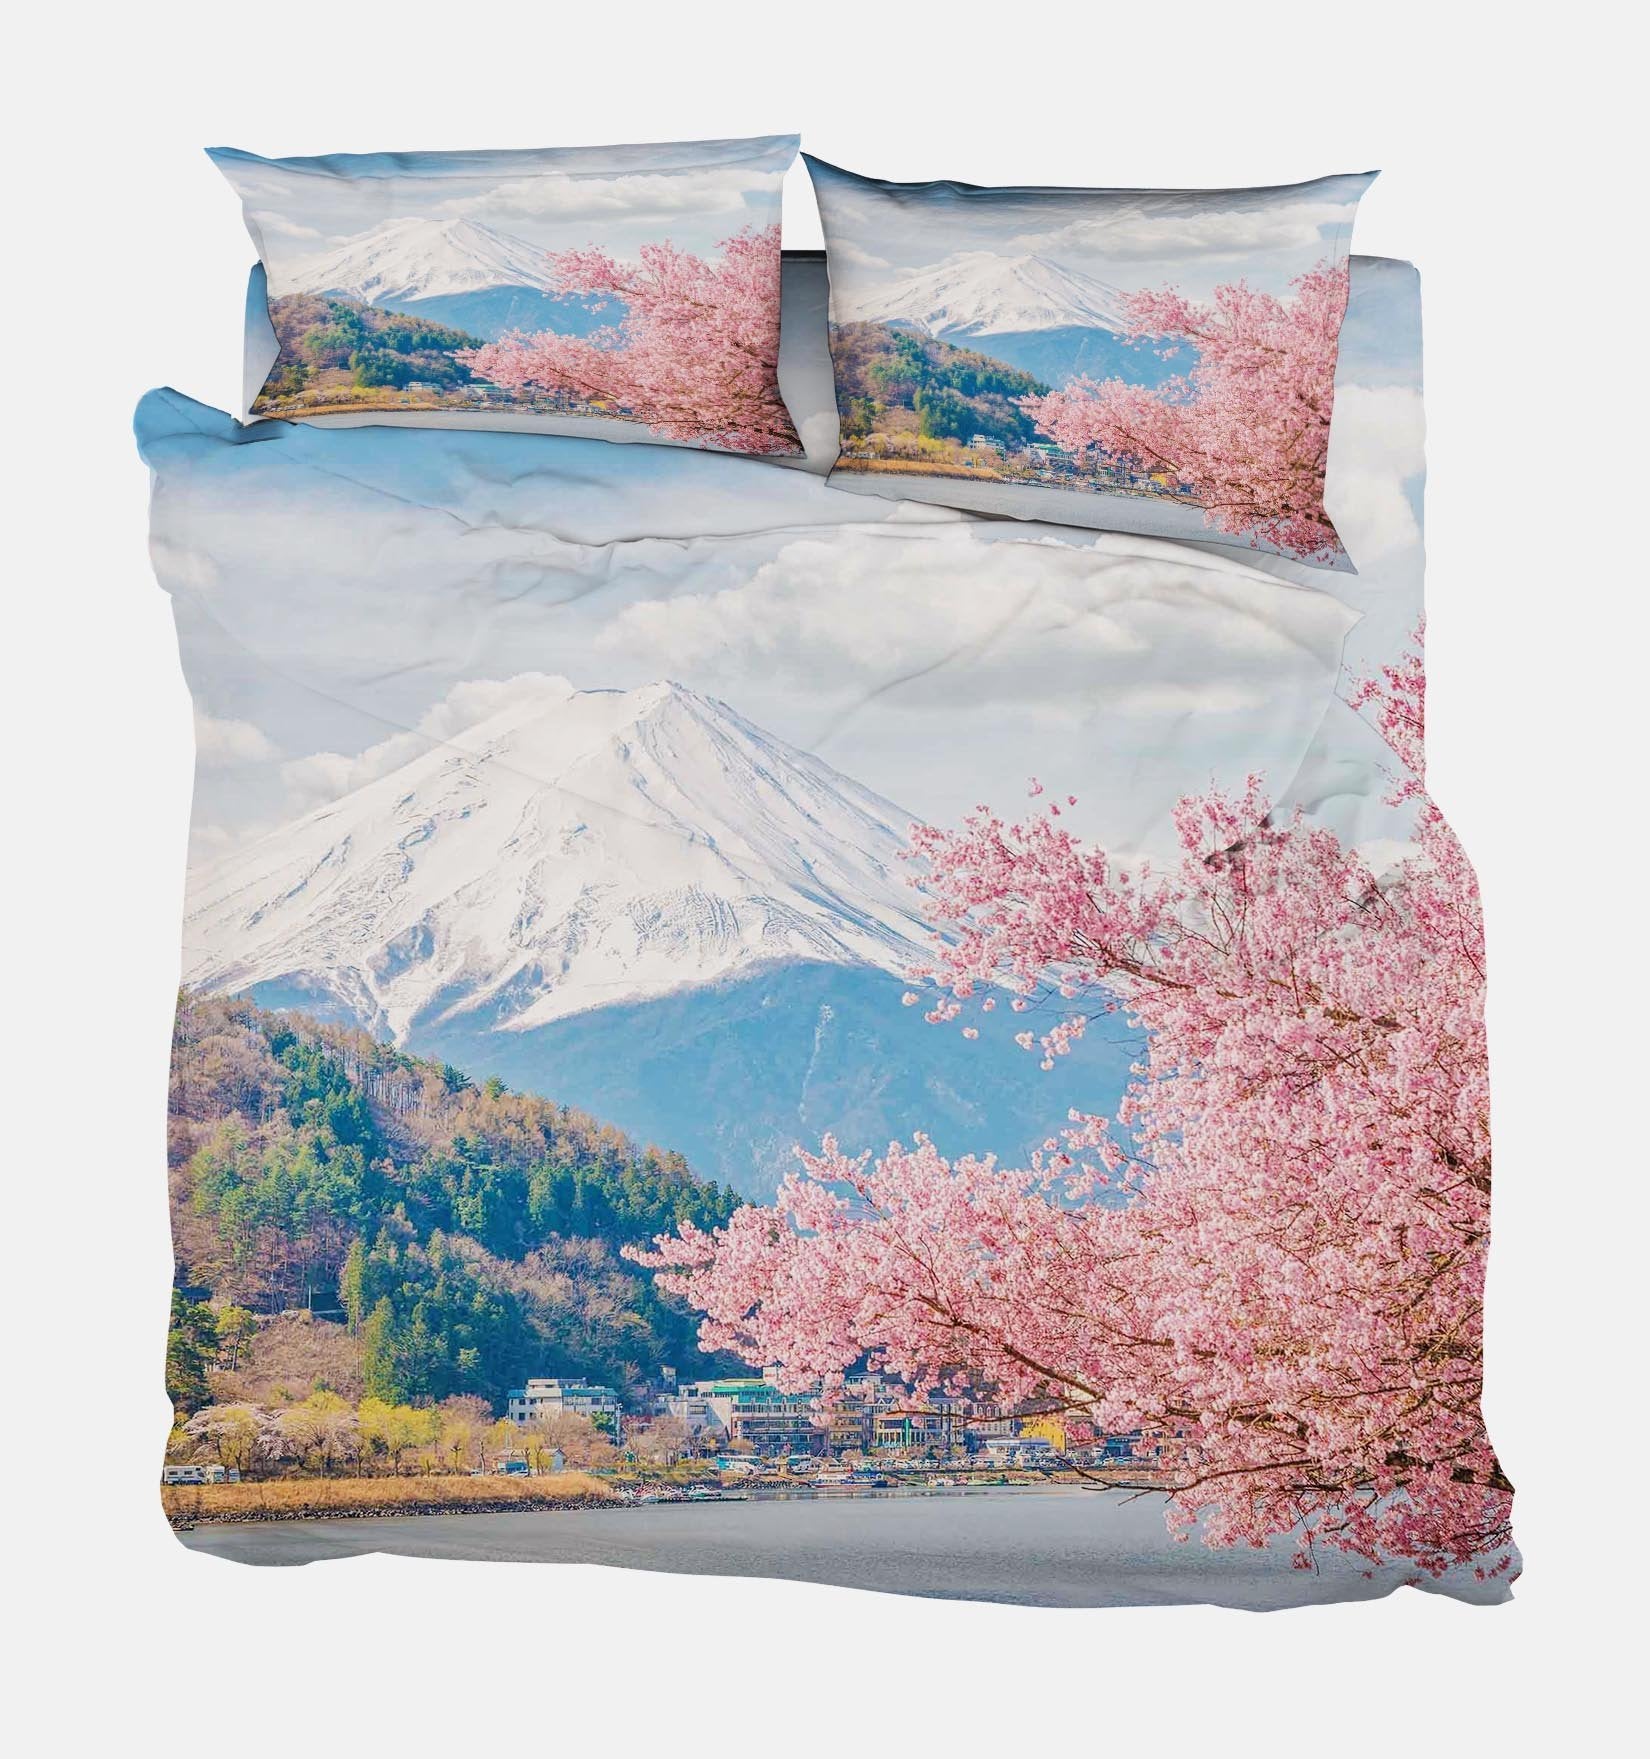 3D Mount Fuji Scenery 30 Bed Pillowcases Quilt Wallpaper AJ Wallpaper 